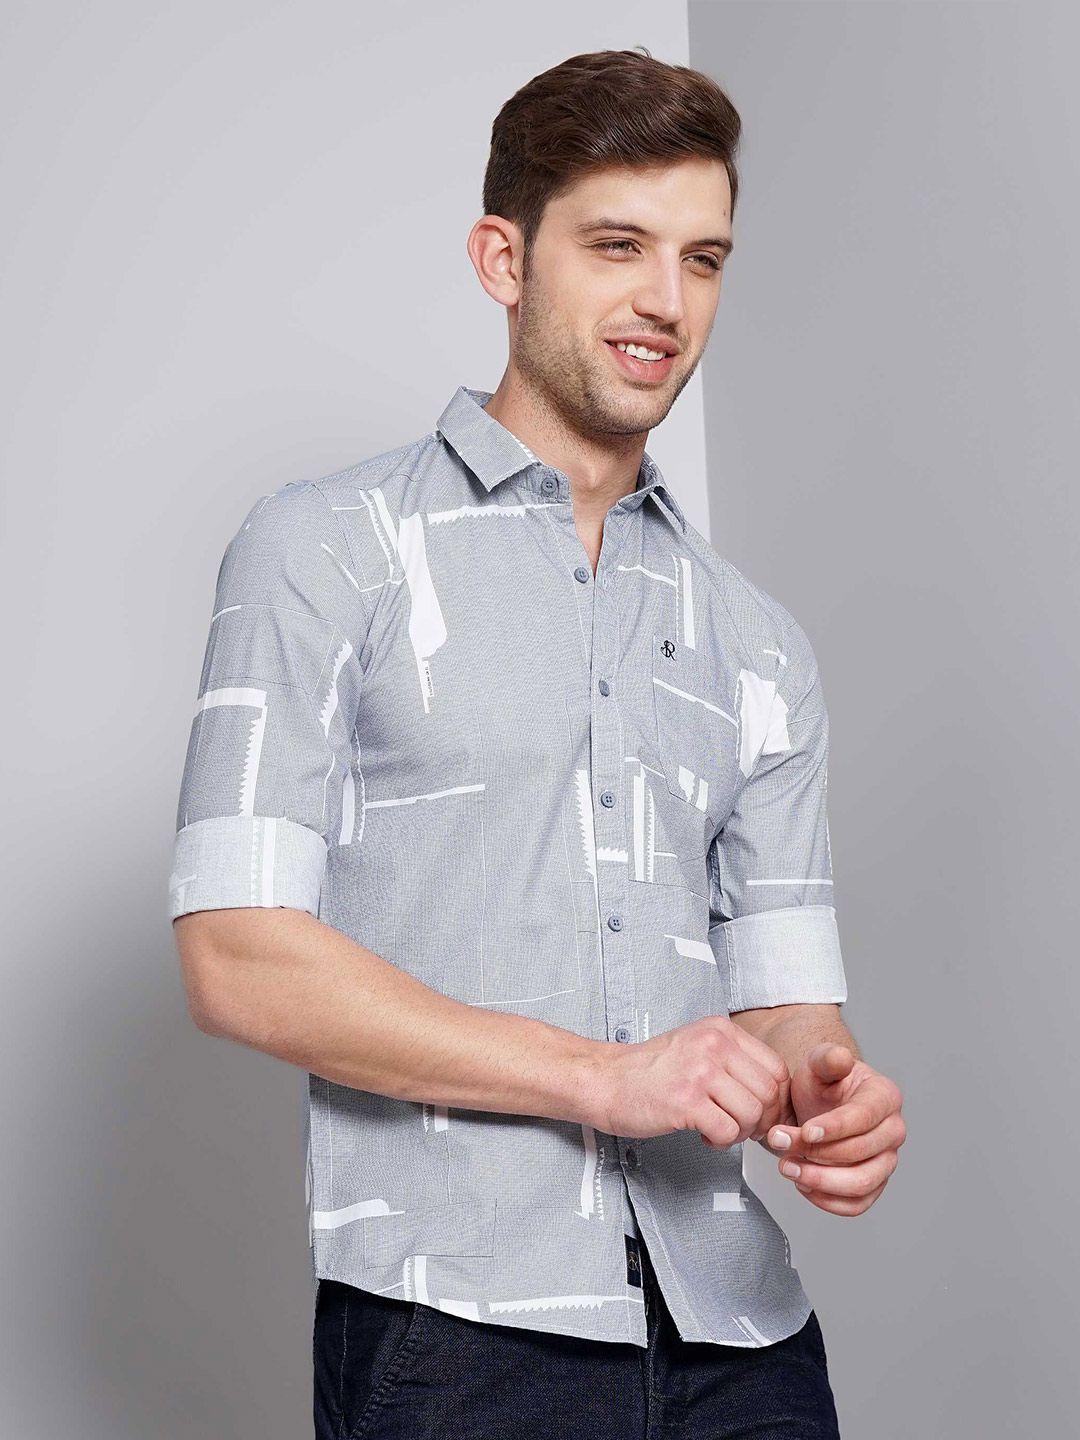 soratia slim fit geometric printed cotton casual shirt